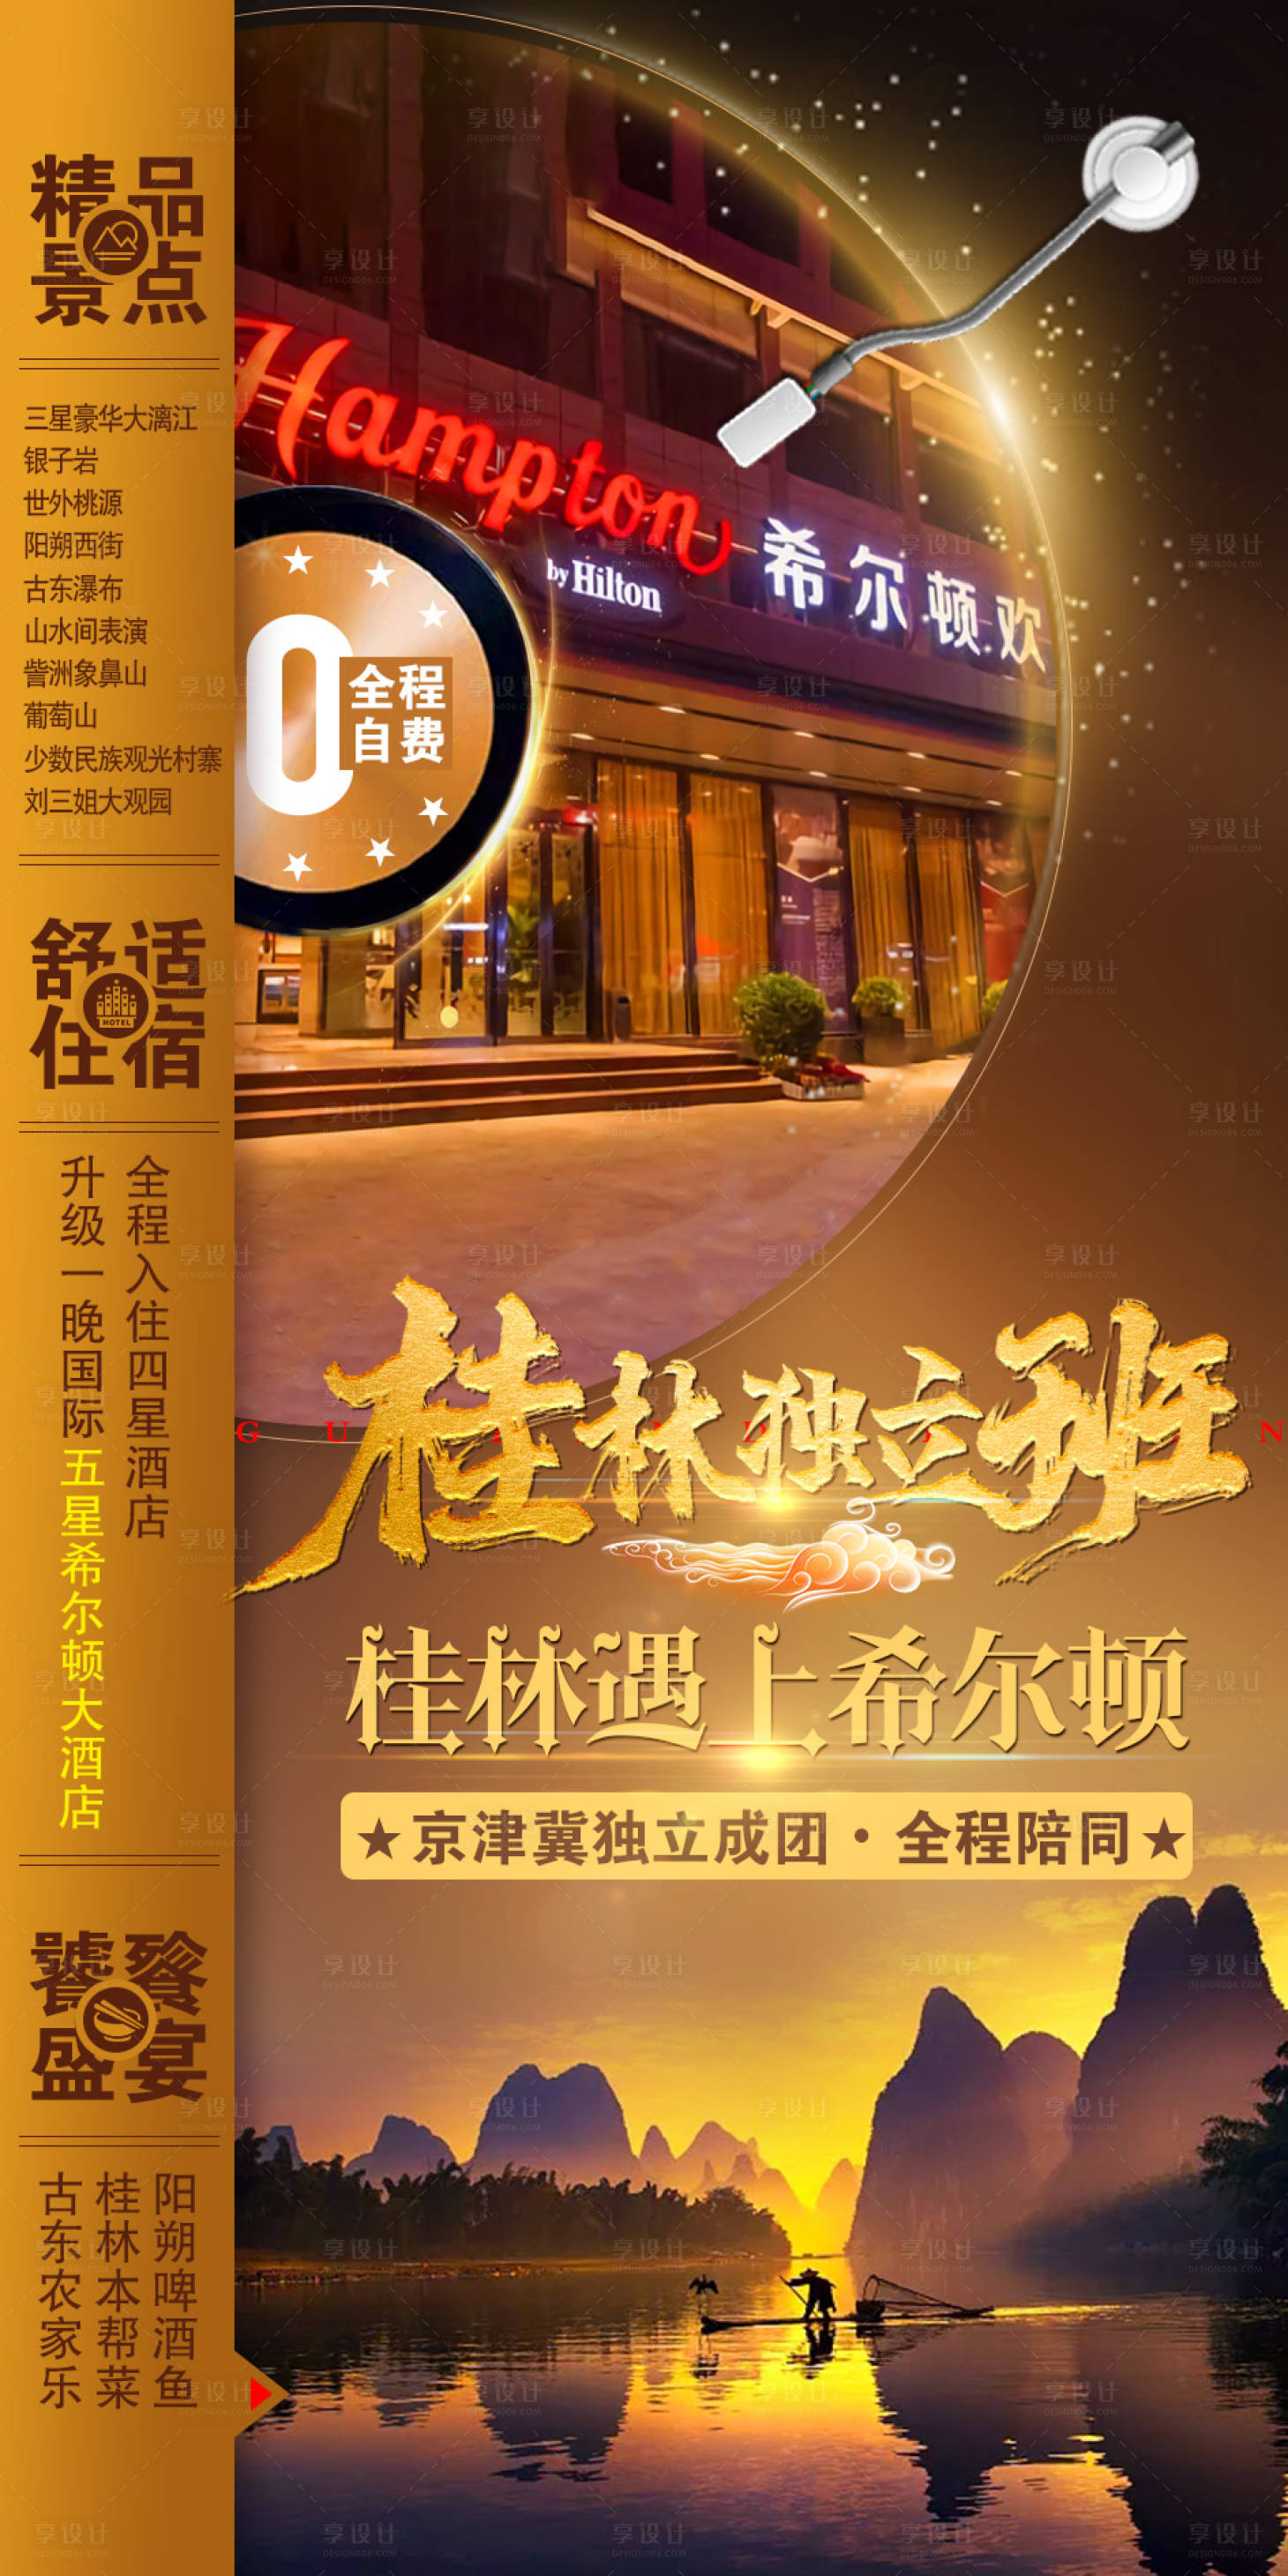 桂林旅游移动端海报PSD广告设计素材海报模板免费下载-享设计